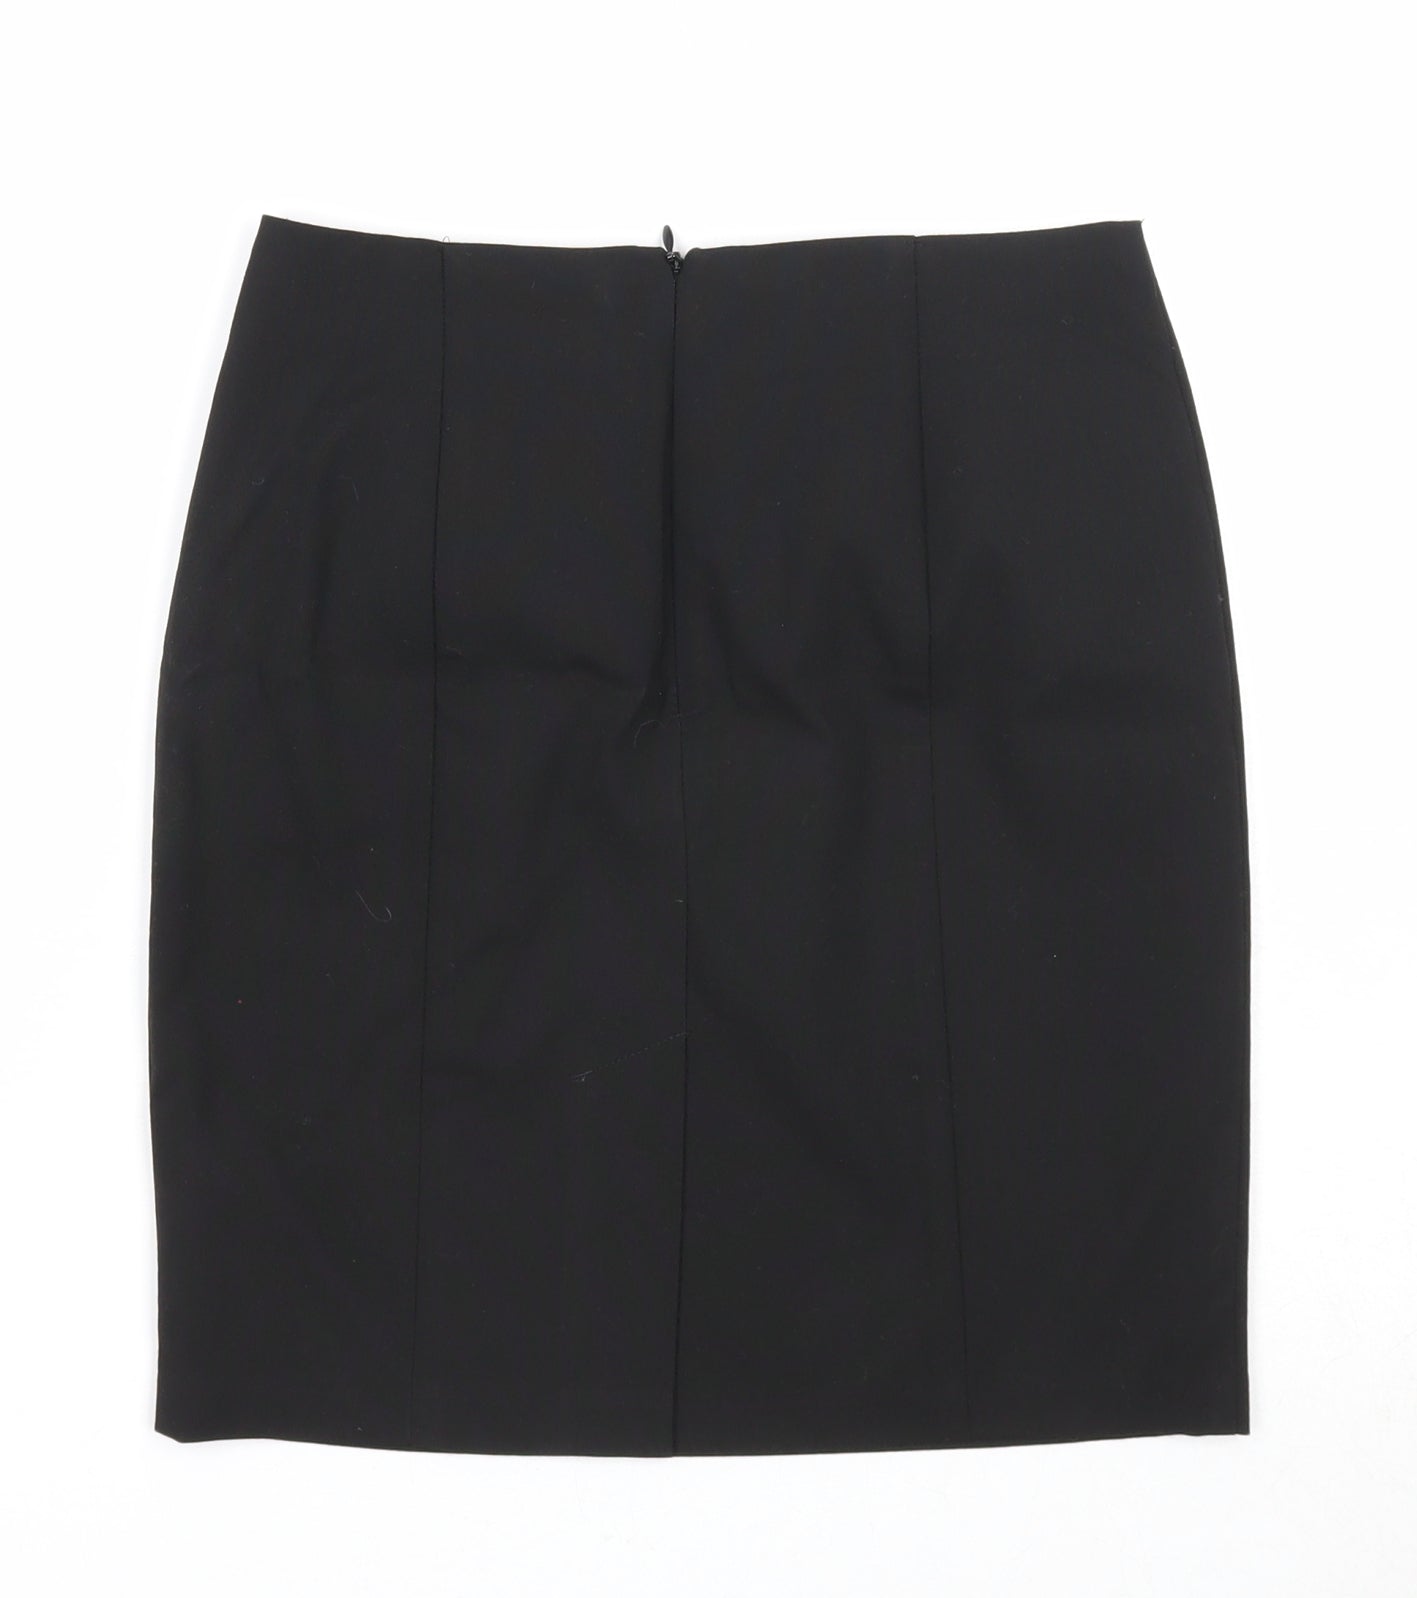 Marks and Spencer Girls Black Polyester Bandage Skirt Size 12-13 Years Regular Zip